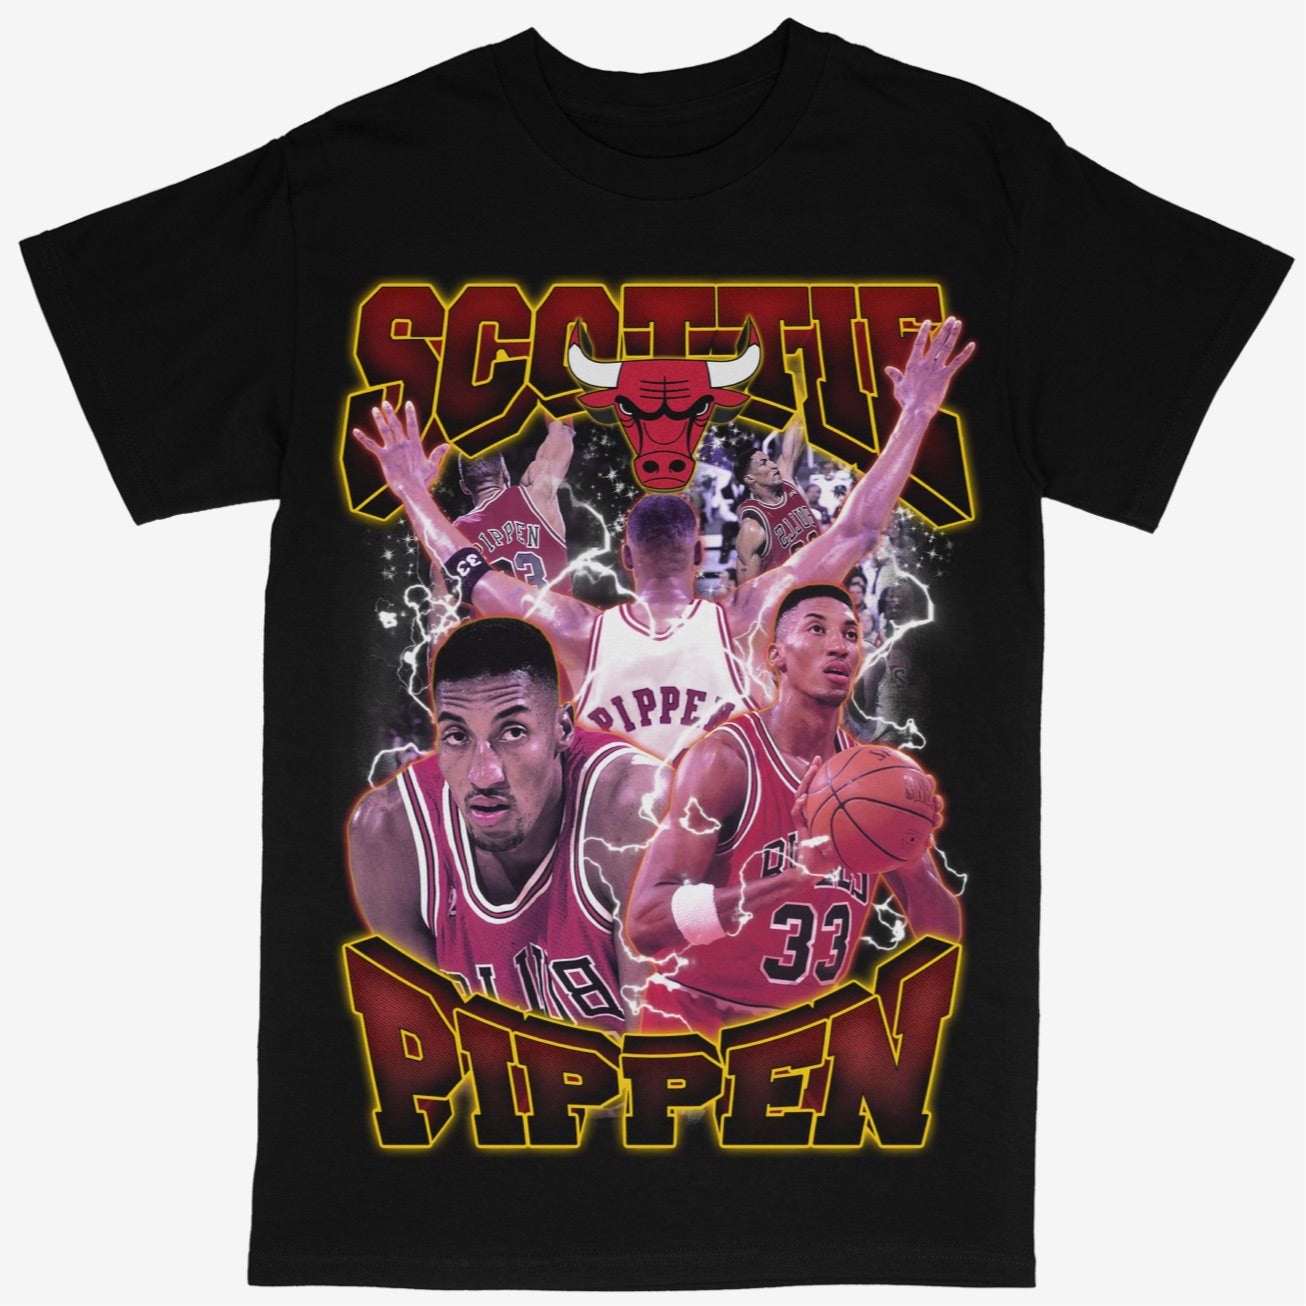 Scottie Pippen Tee Shirt Chicago Bulls NBA Basketball